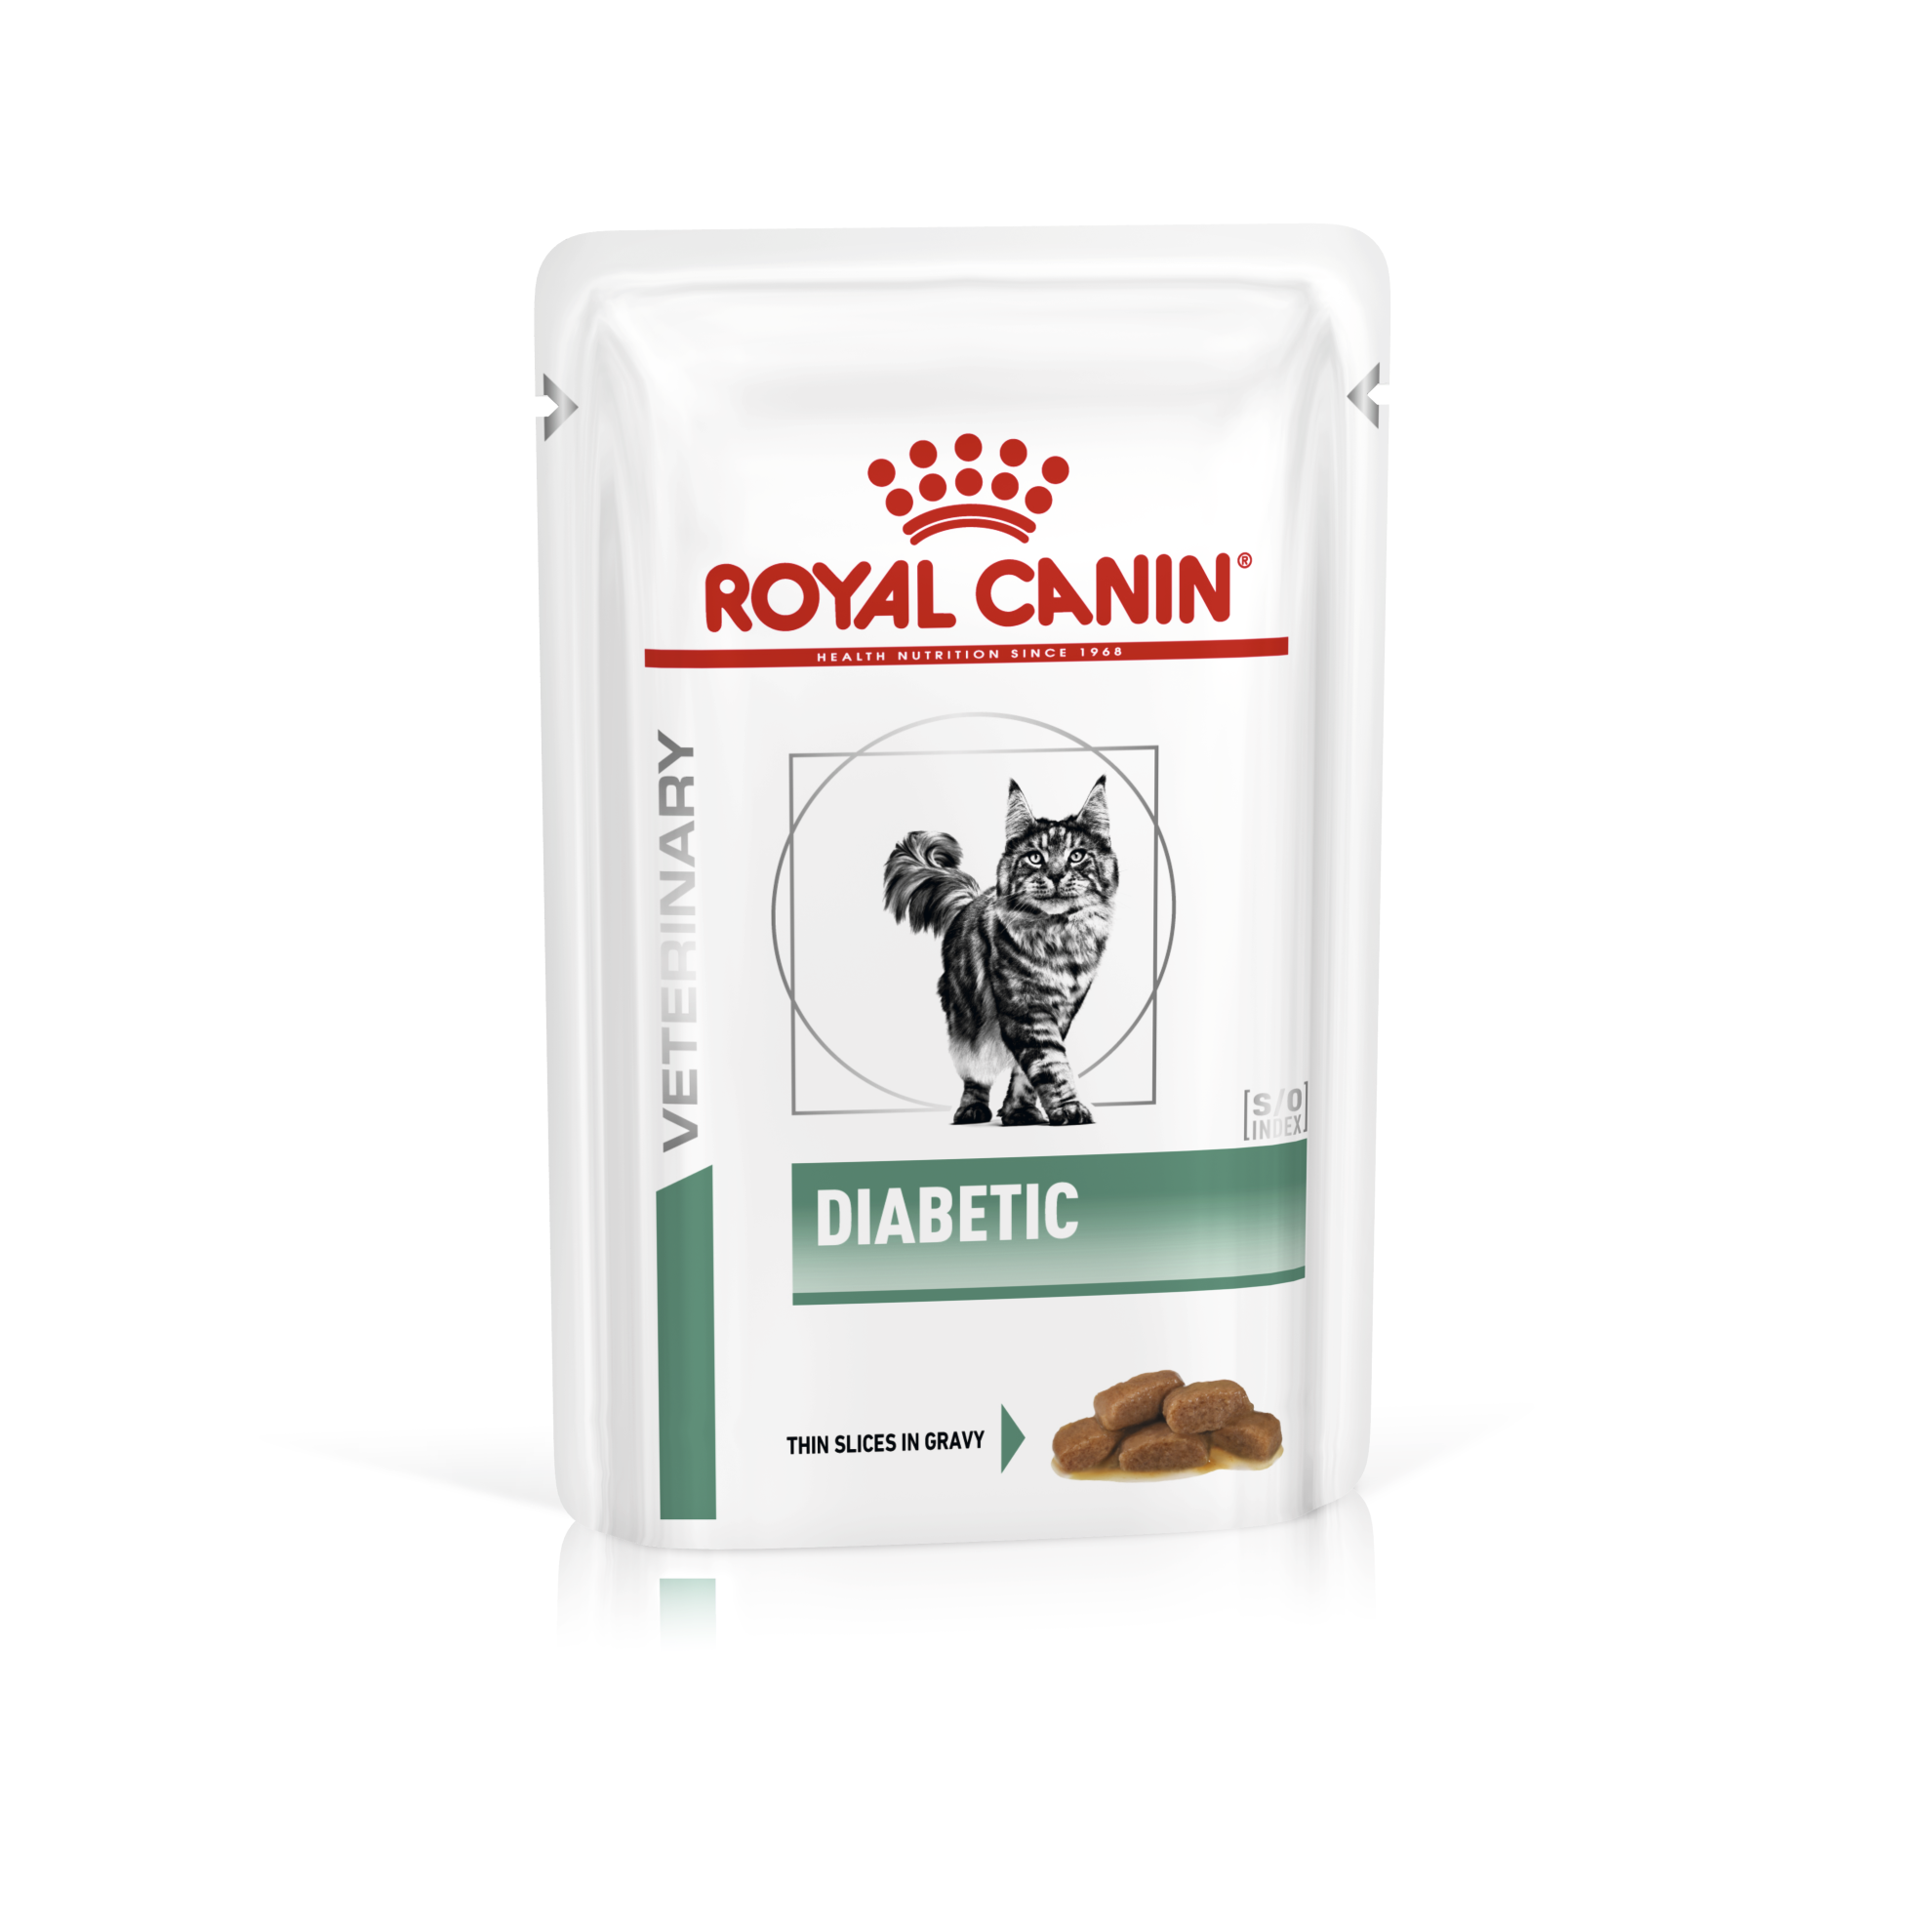 Royal Canin Diabetic 85g petbay.lk